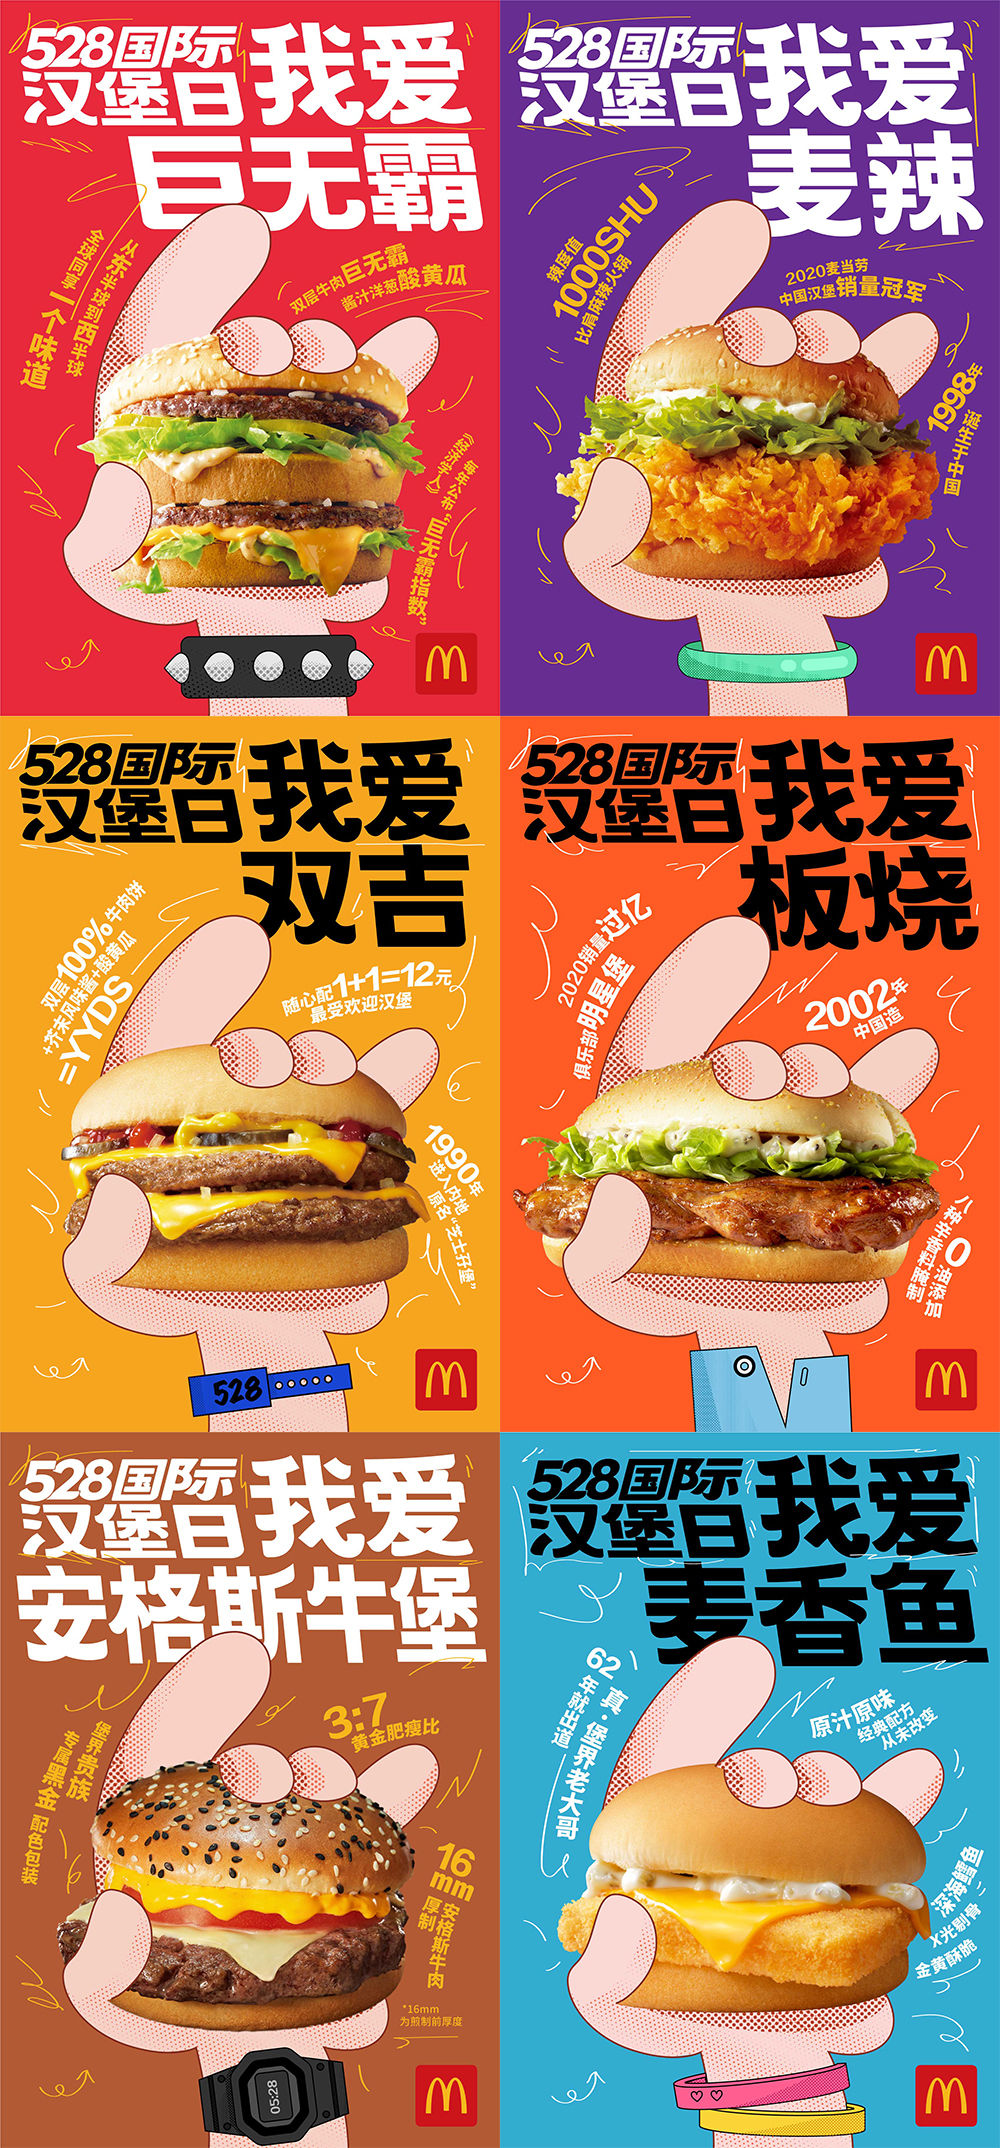 麦当劳中国通过   款人气汉堡海报致敬「528 国际汉堡日」